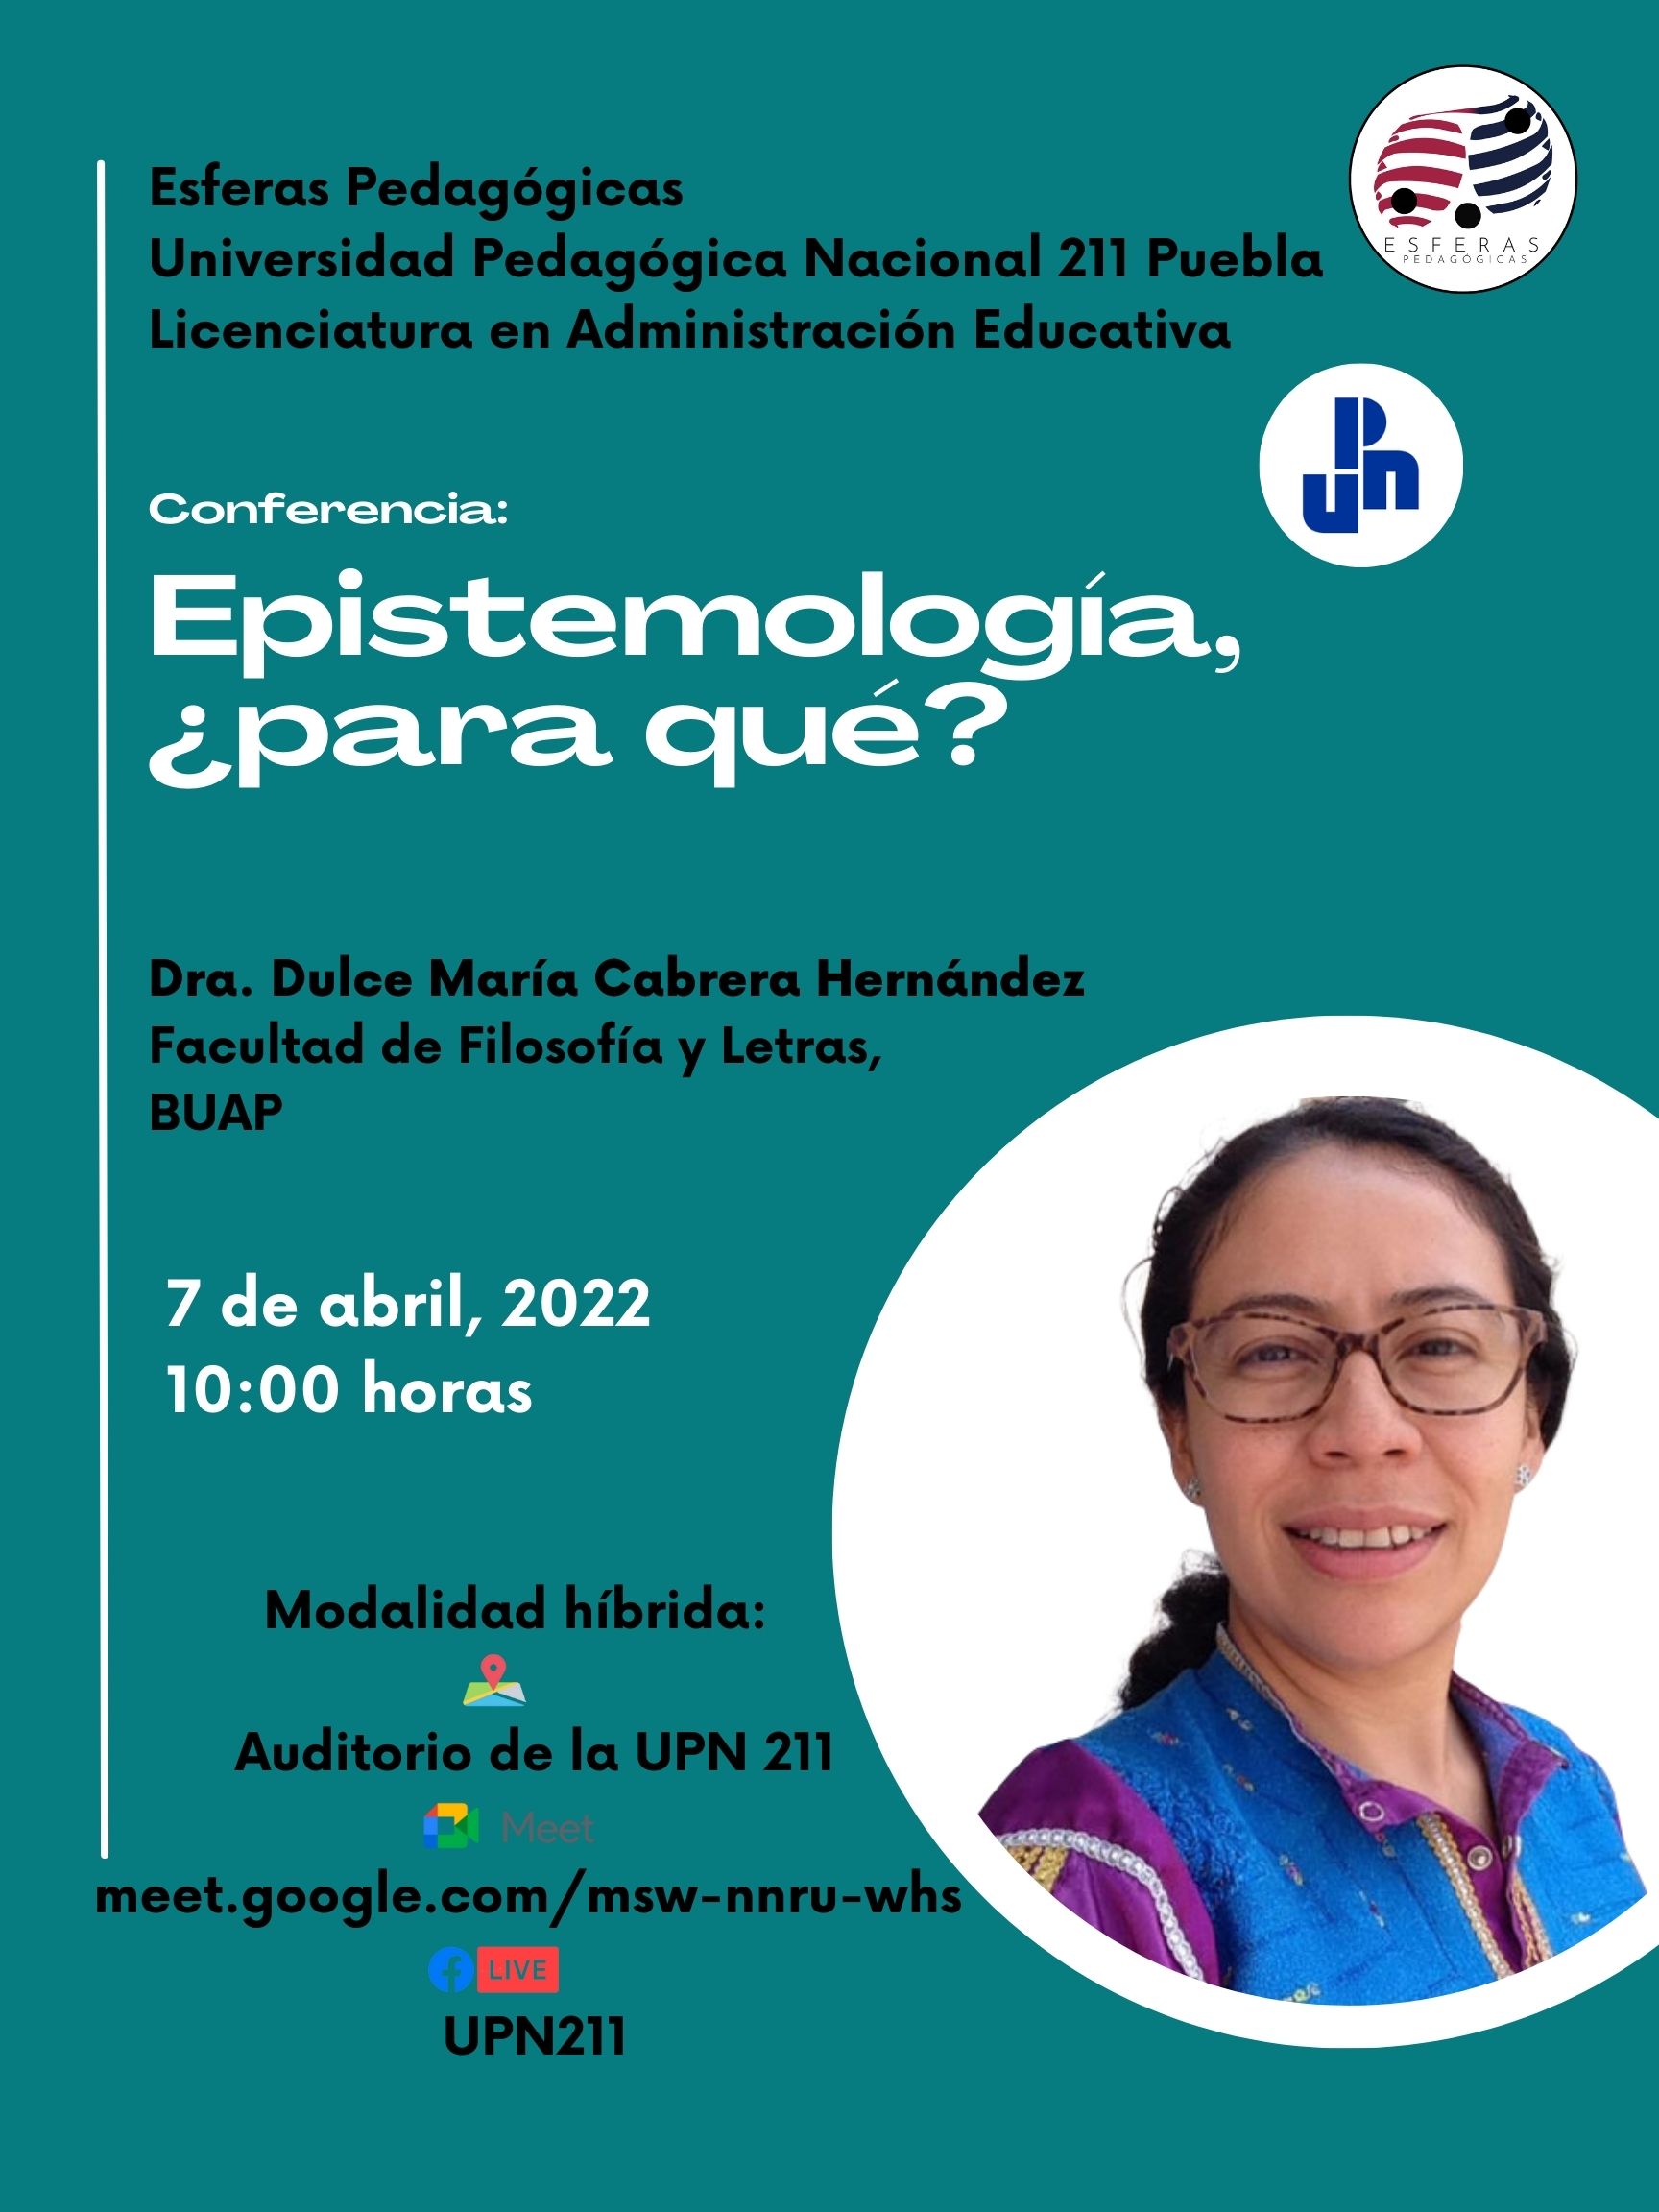 "Epistemología, ¿para qué?" Dra. Dulce María Cabrera Hernández